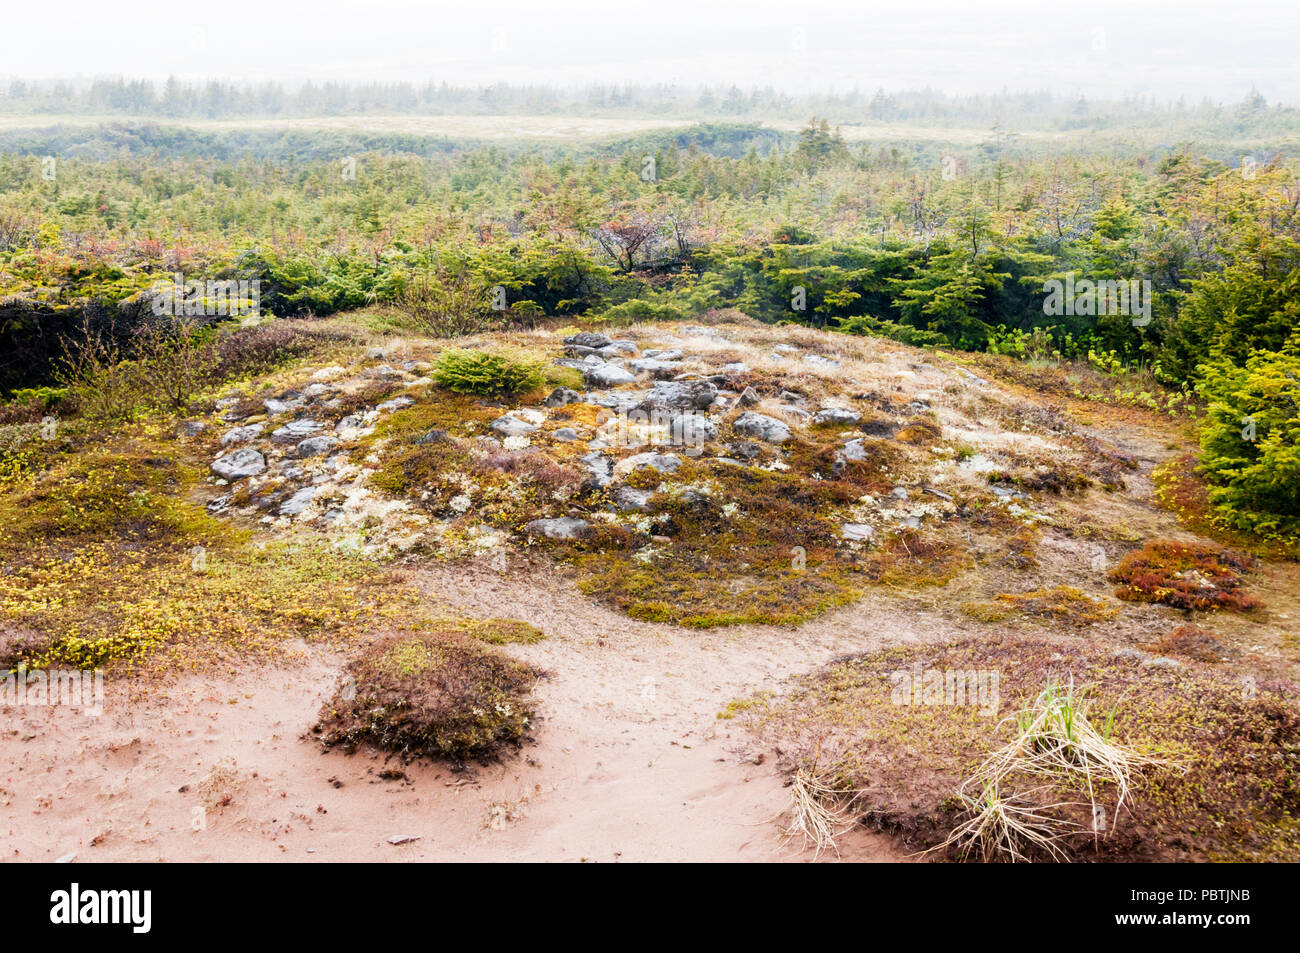 Ce monticule sur la côte du Labrador marque lieu de sépulture d'un enfant qui est mort de l'Archaïque maritime c7500 il y a des années. Inhumation connue plus tôt en Amérique du Nord. Banque D'Images